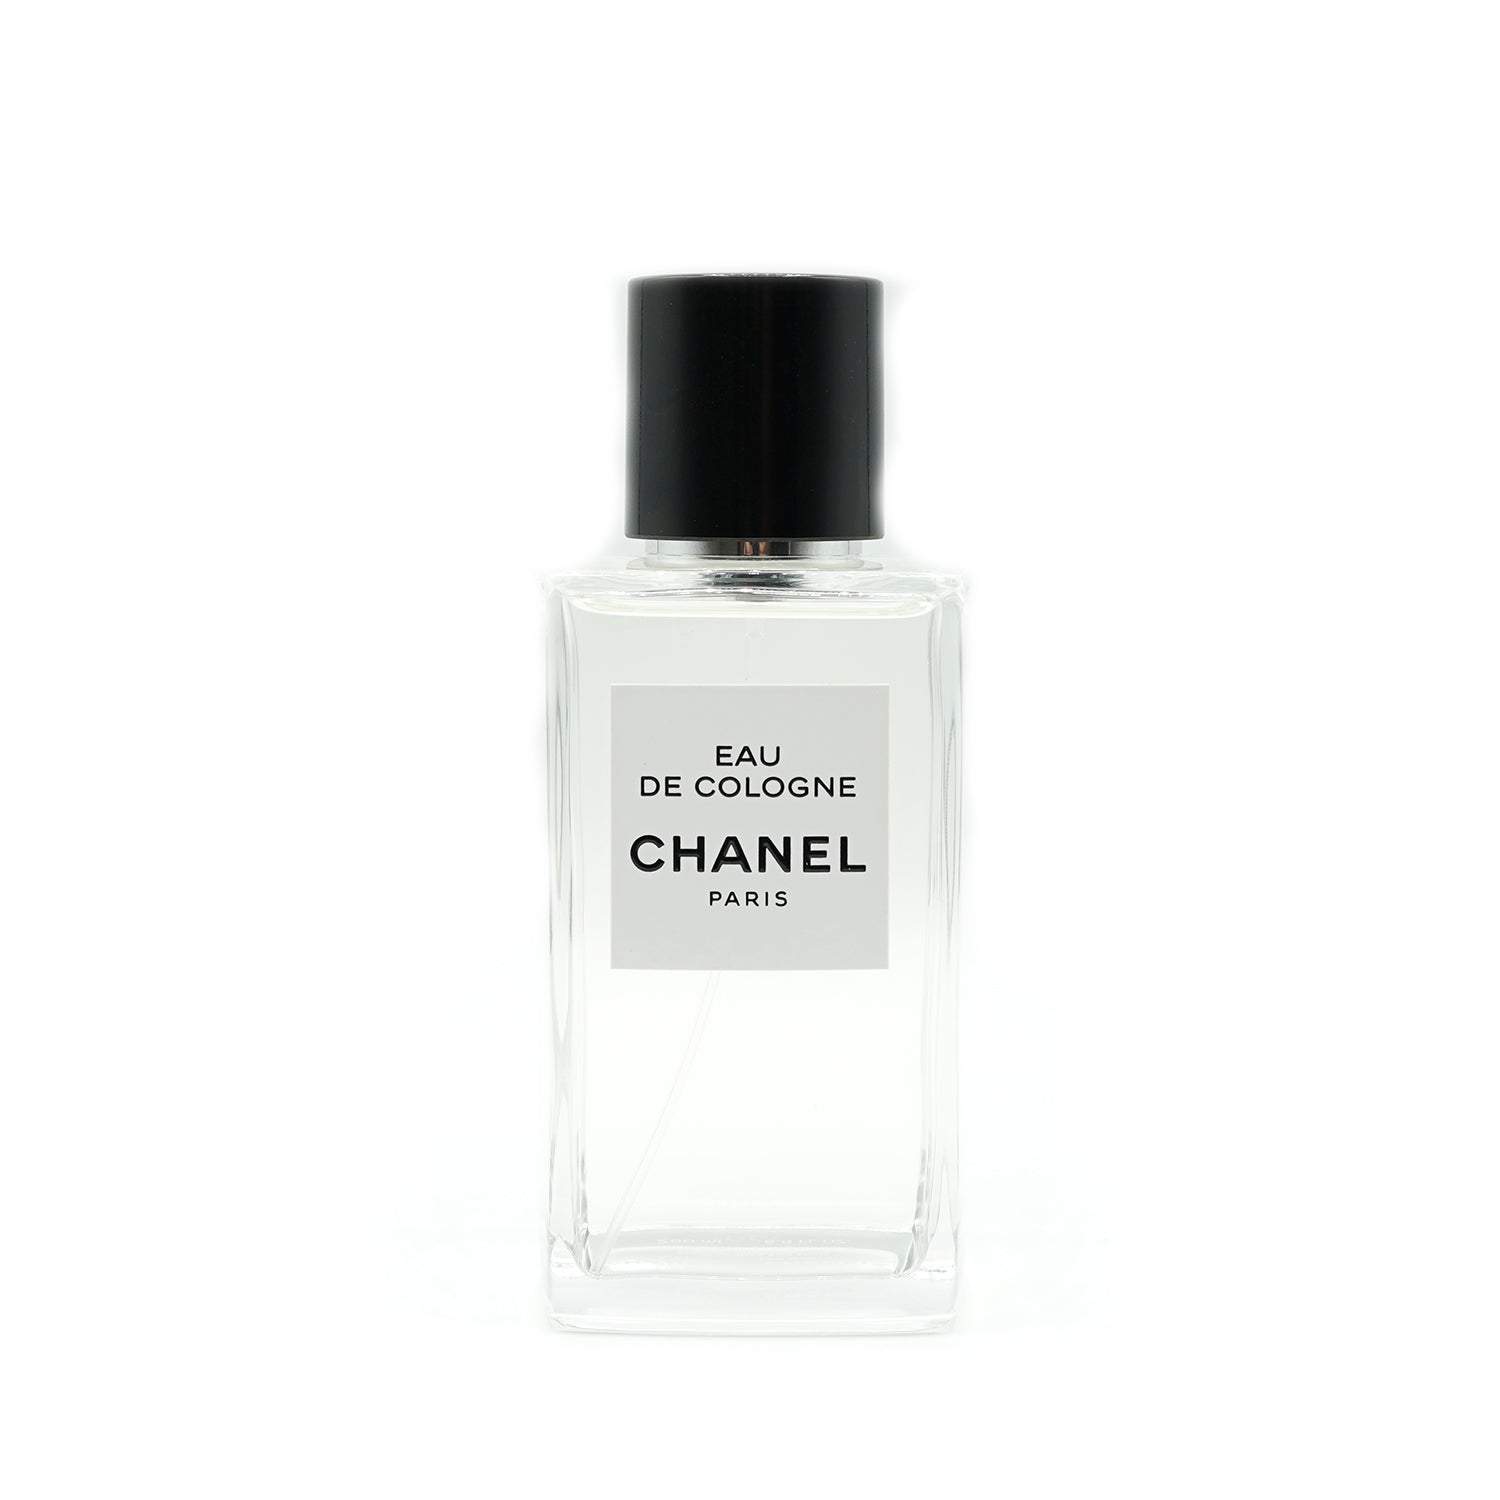 Les Exclusives de Chanel | Eau de Cologne bottling